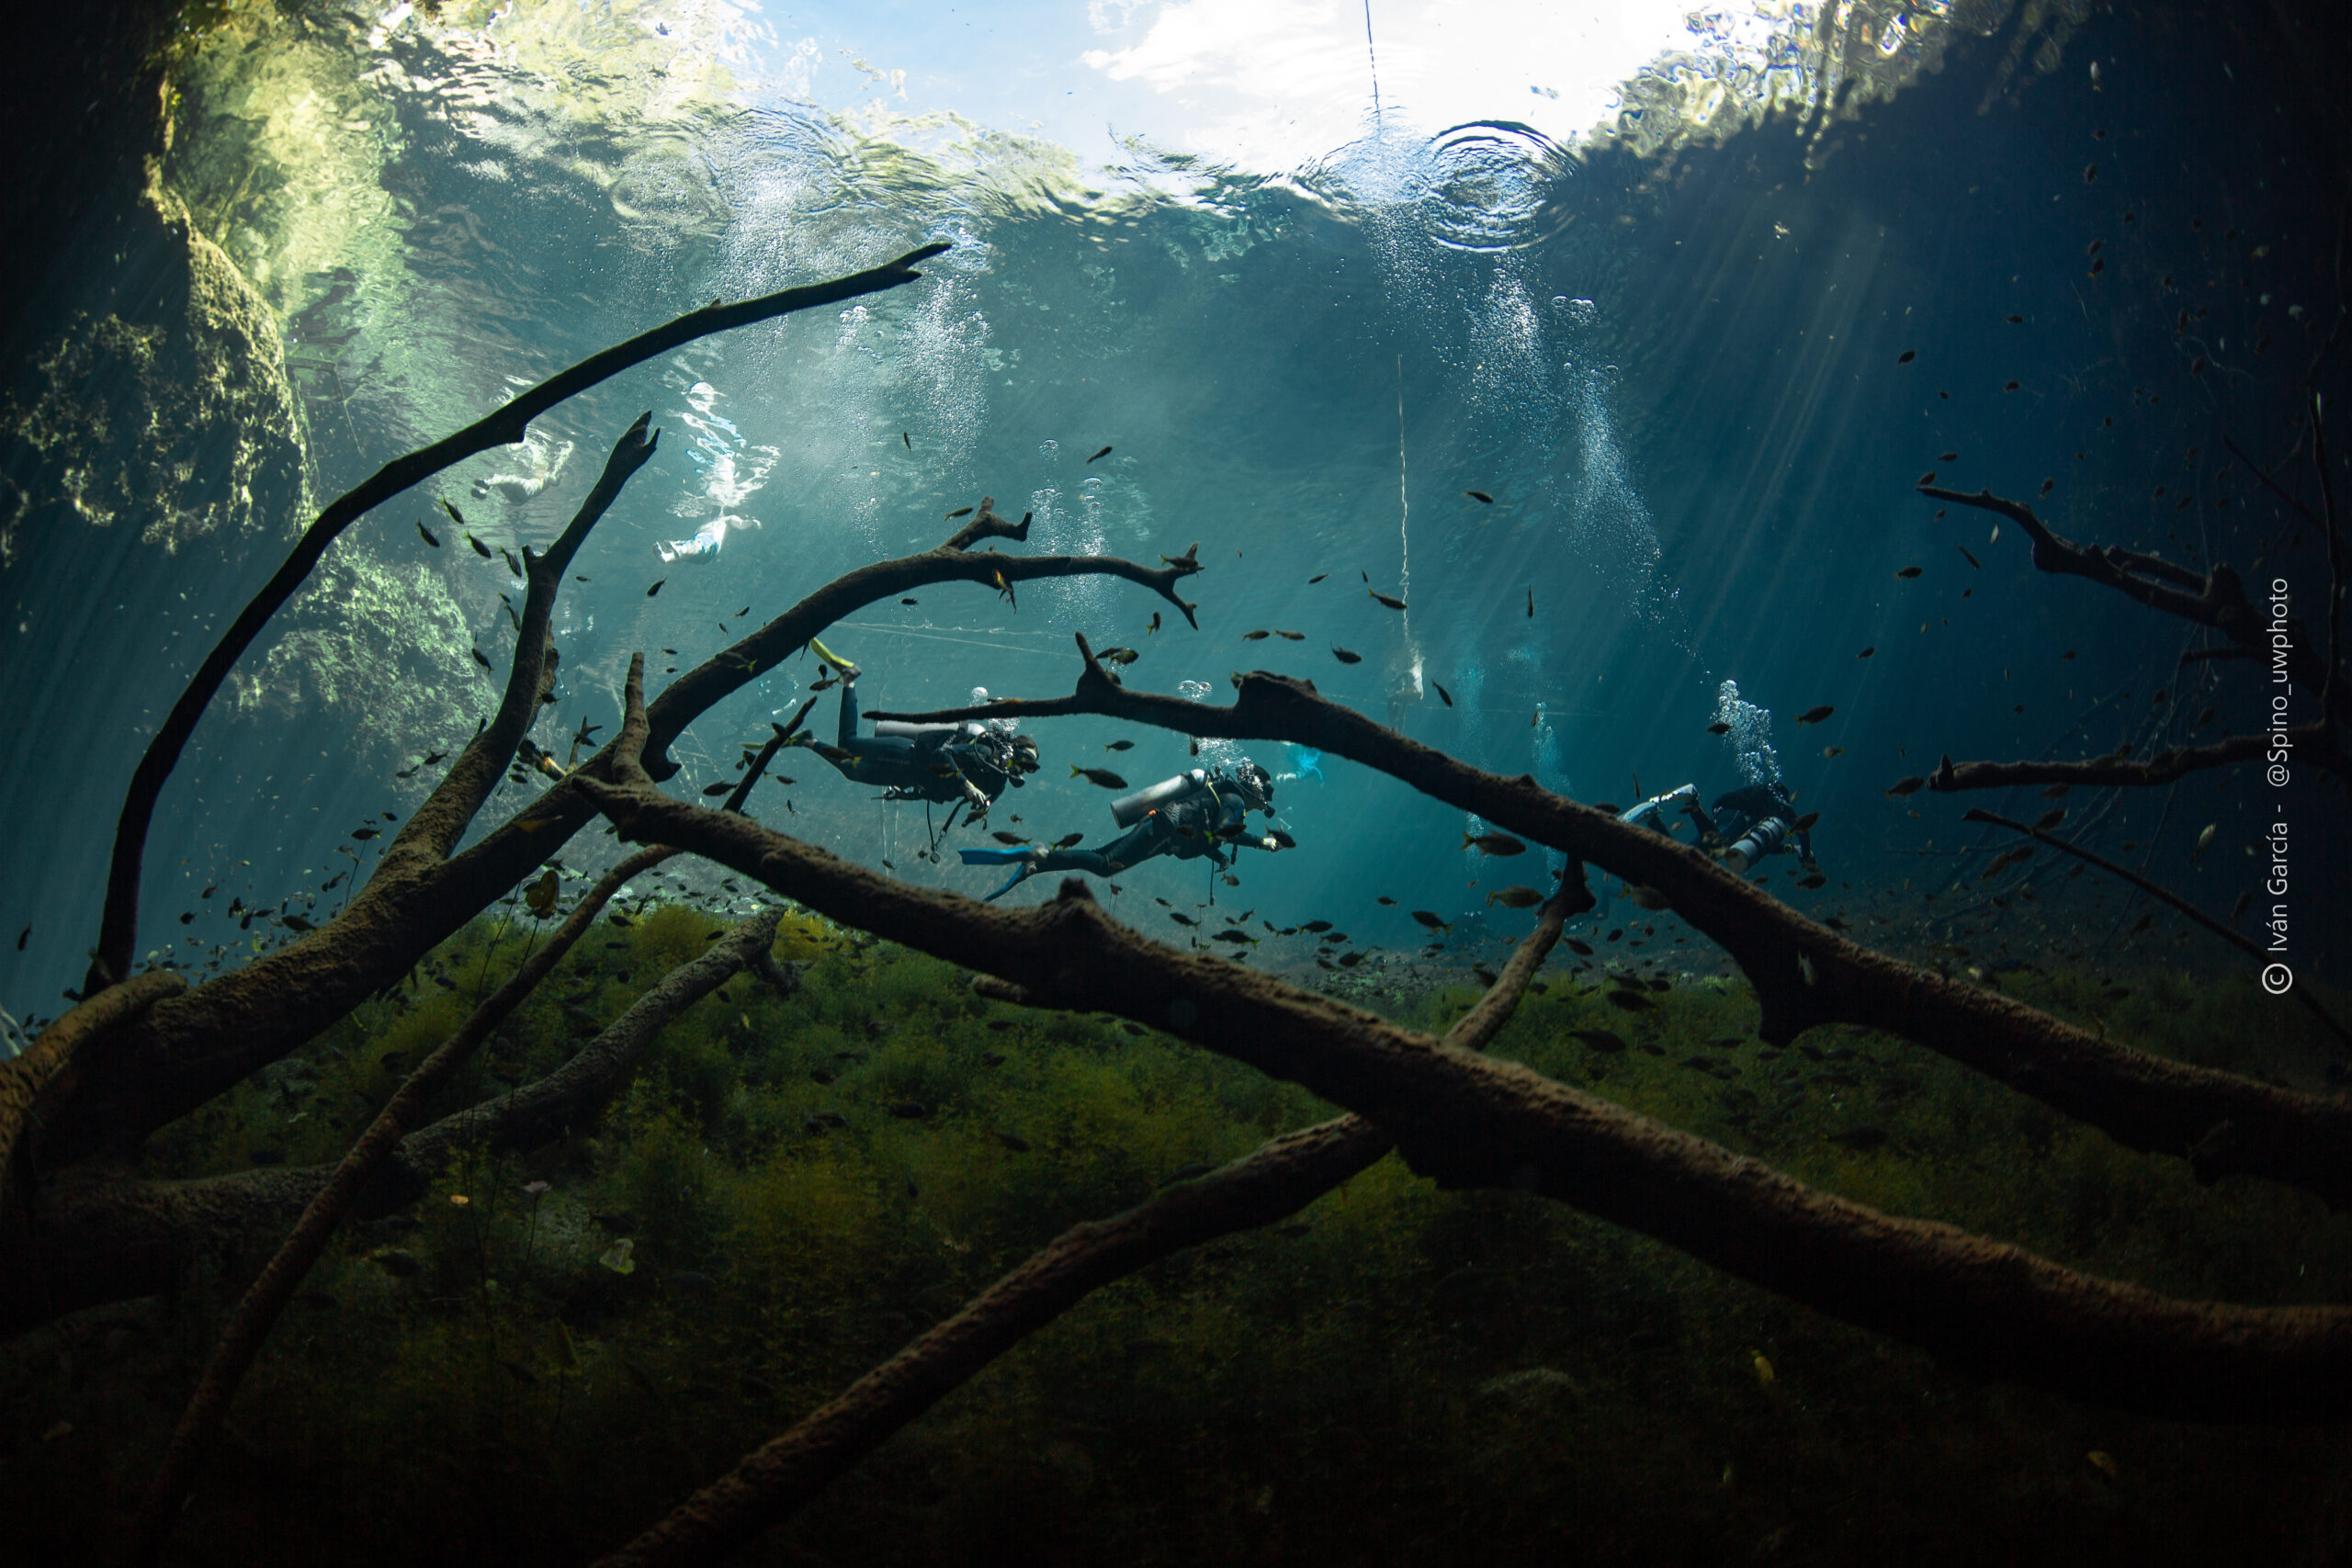 Les aventuriers de Triton Diving glissent à travers les eaux sereines du Cénote Car Wash, encadrés par des branches tortueuses